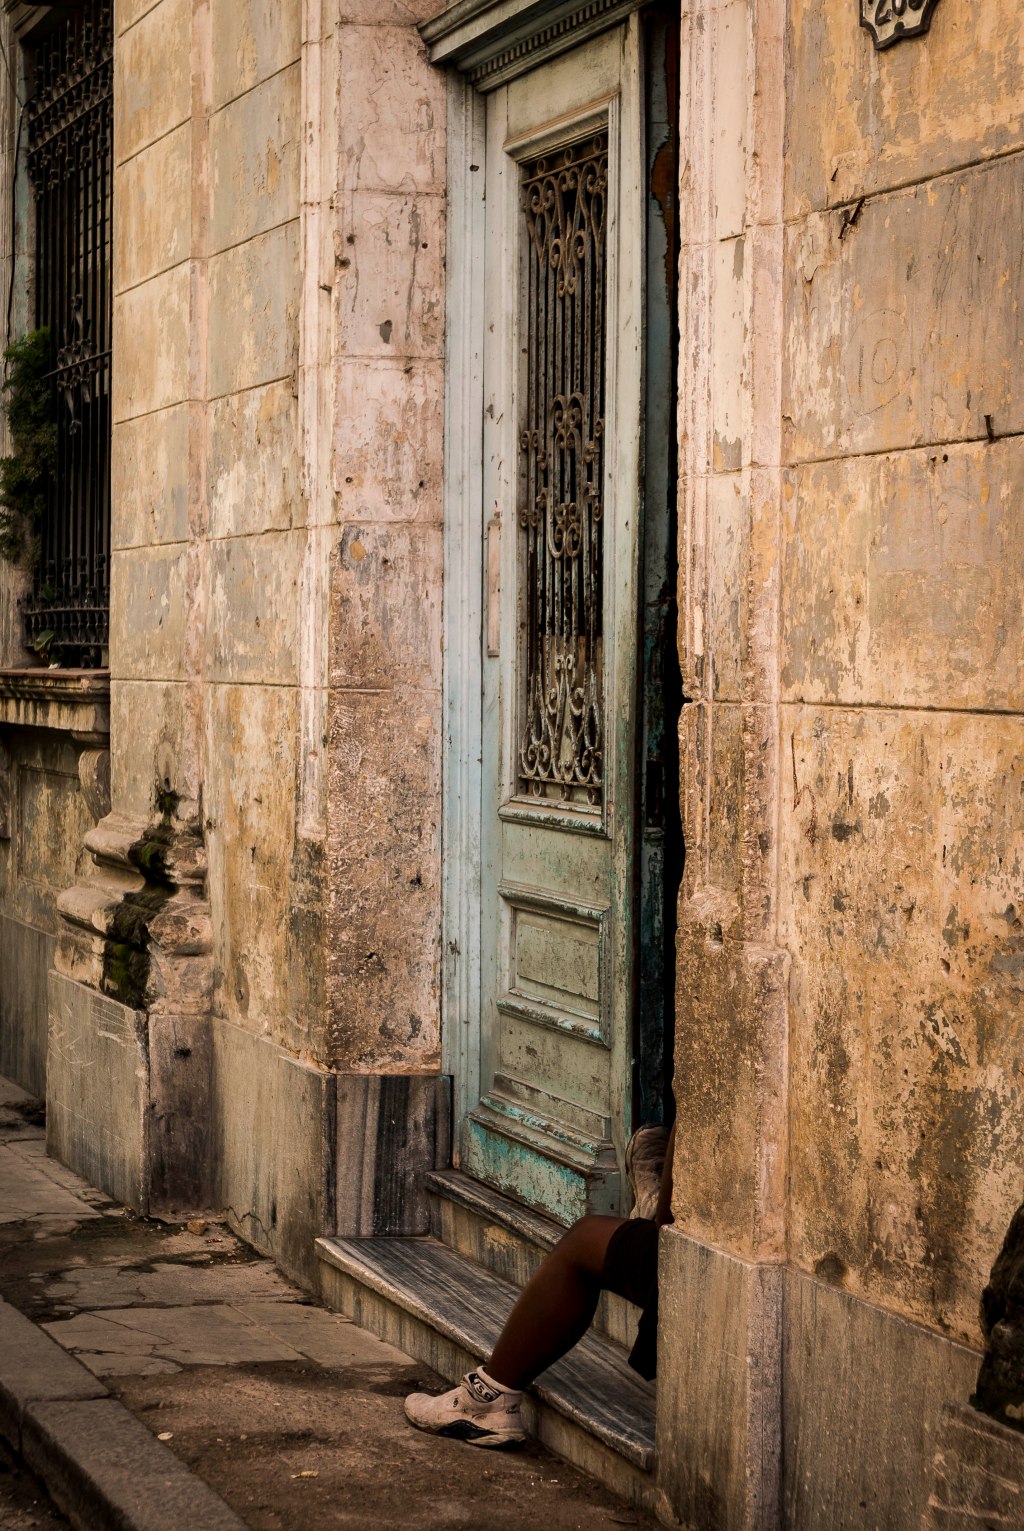 Habana Vieja: looking in